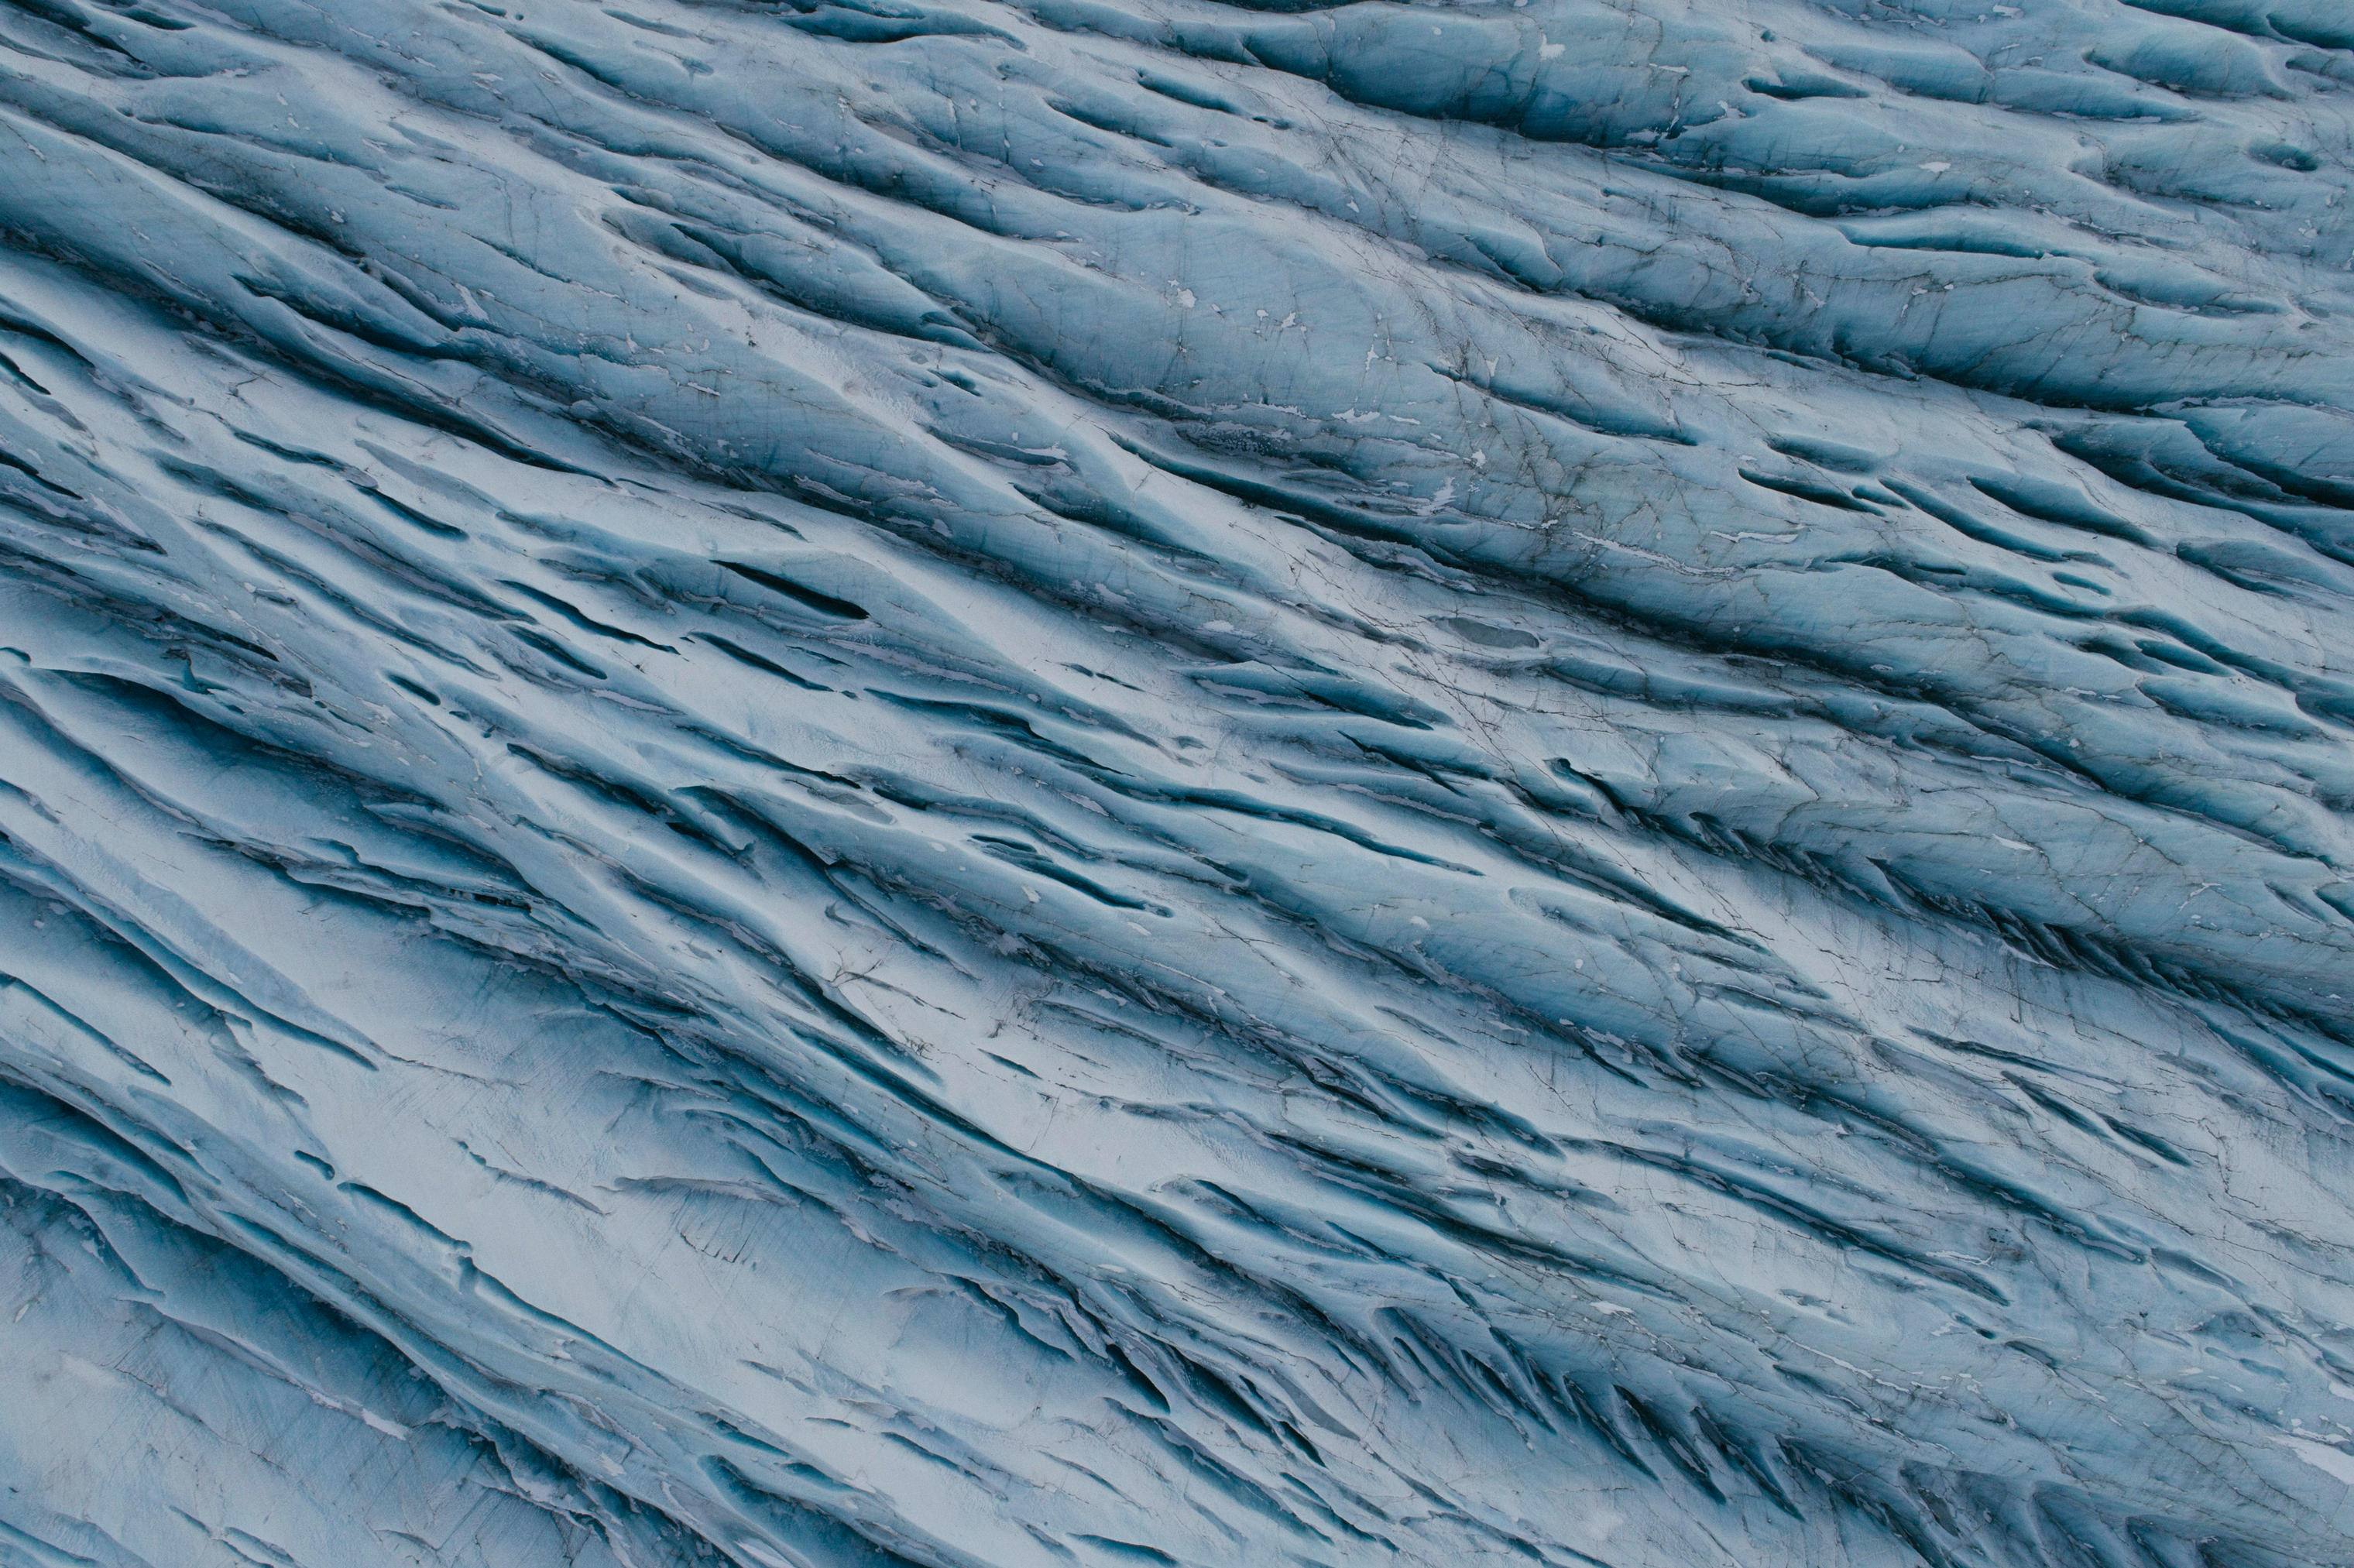 Breiðamerkurjökull glacier (Kiliii Yuyan)